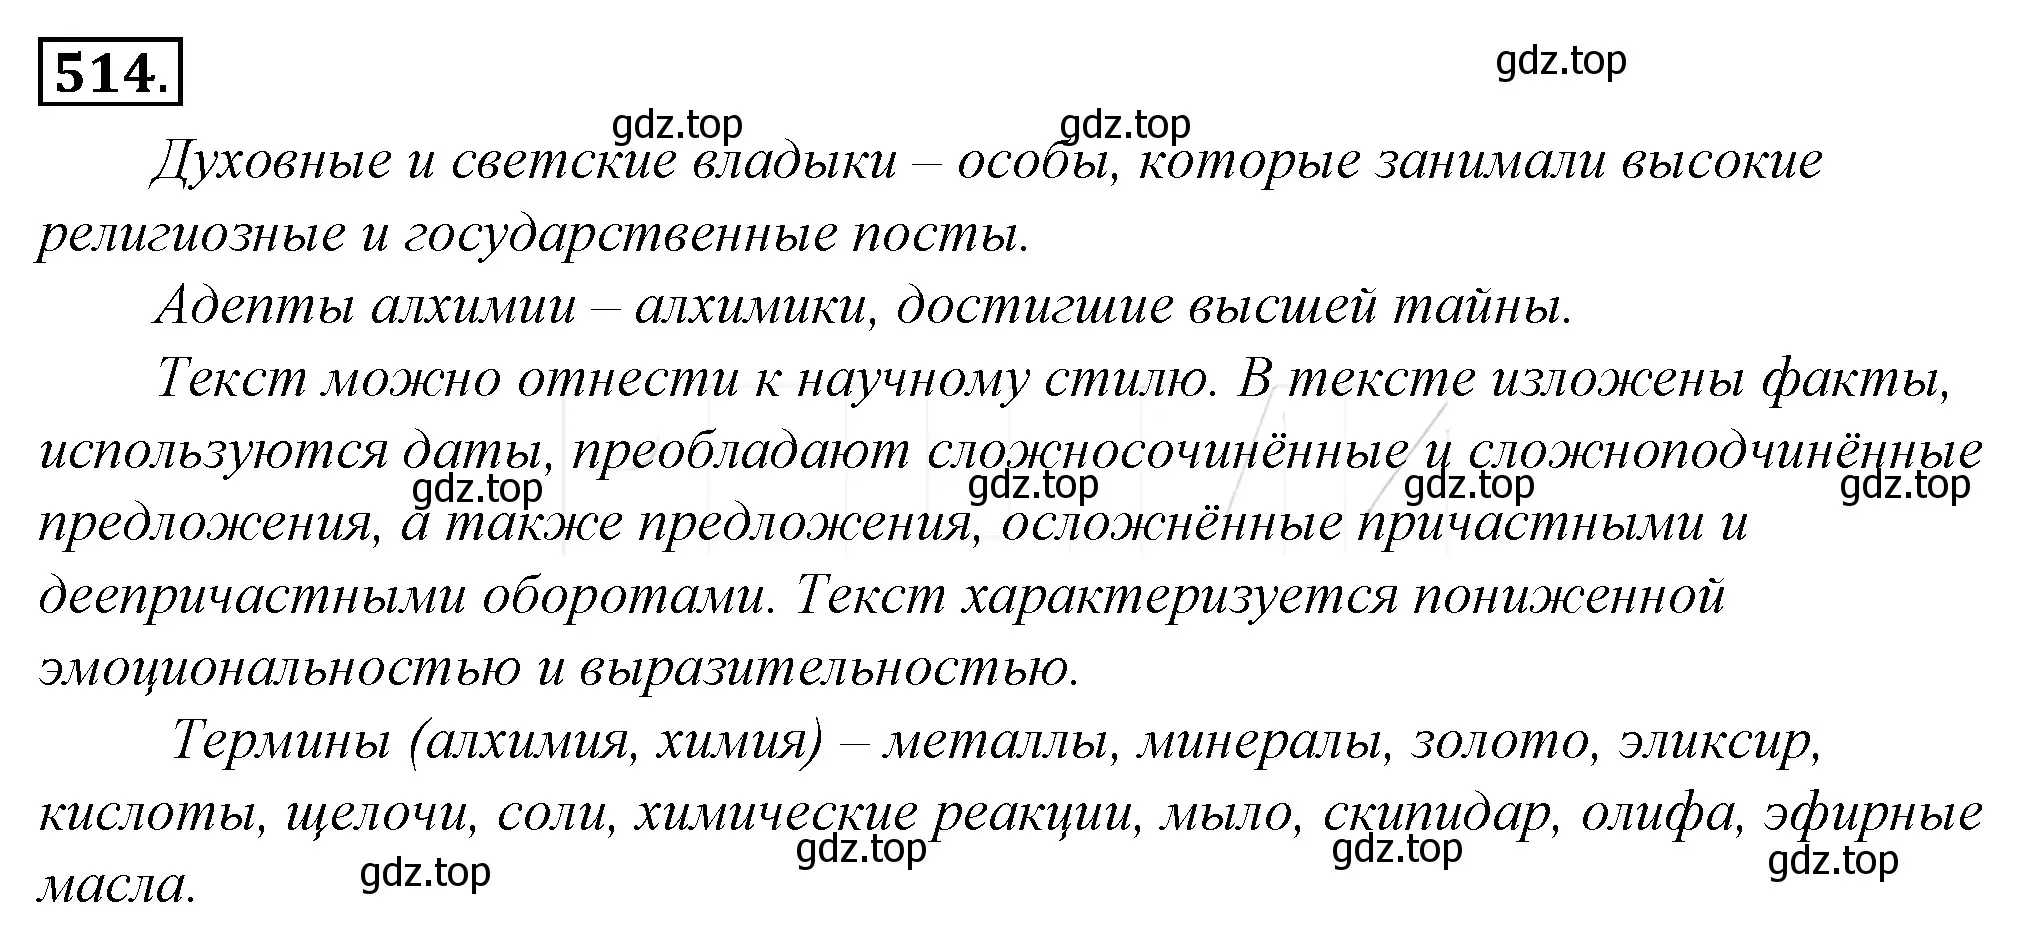 Решение 4. номер 189 (страница 269) гдз по русскому языку 10-11 класс Гольцова, Шамшин, учебник 2 часть